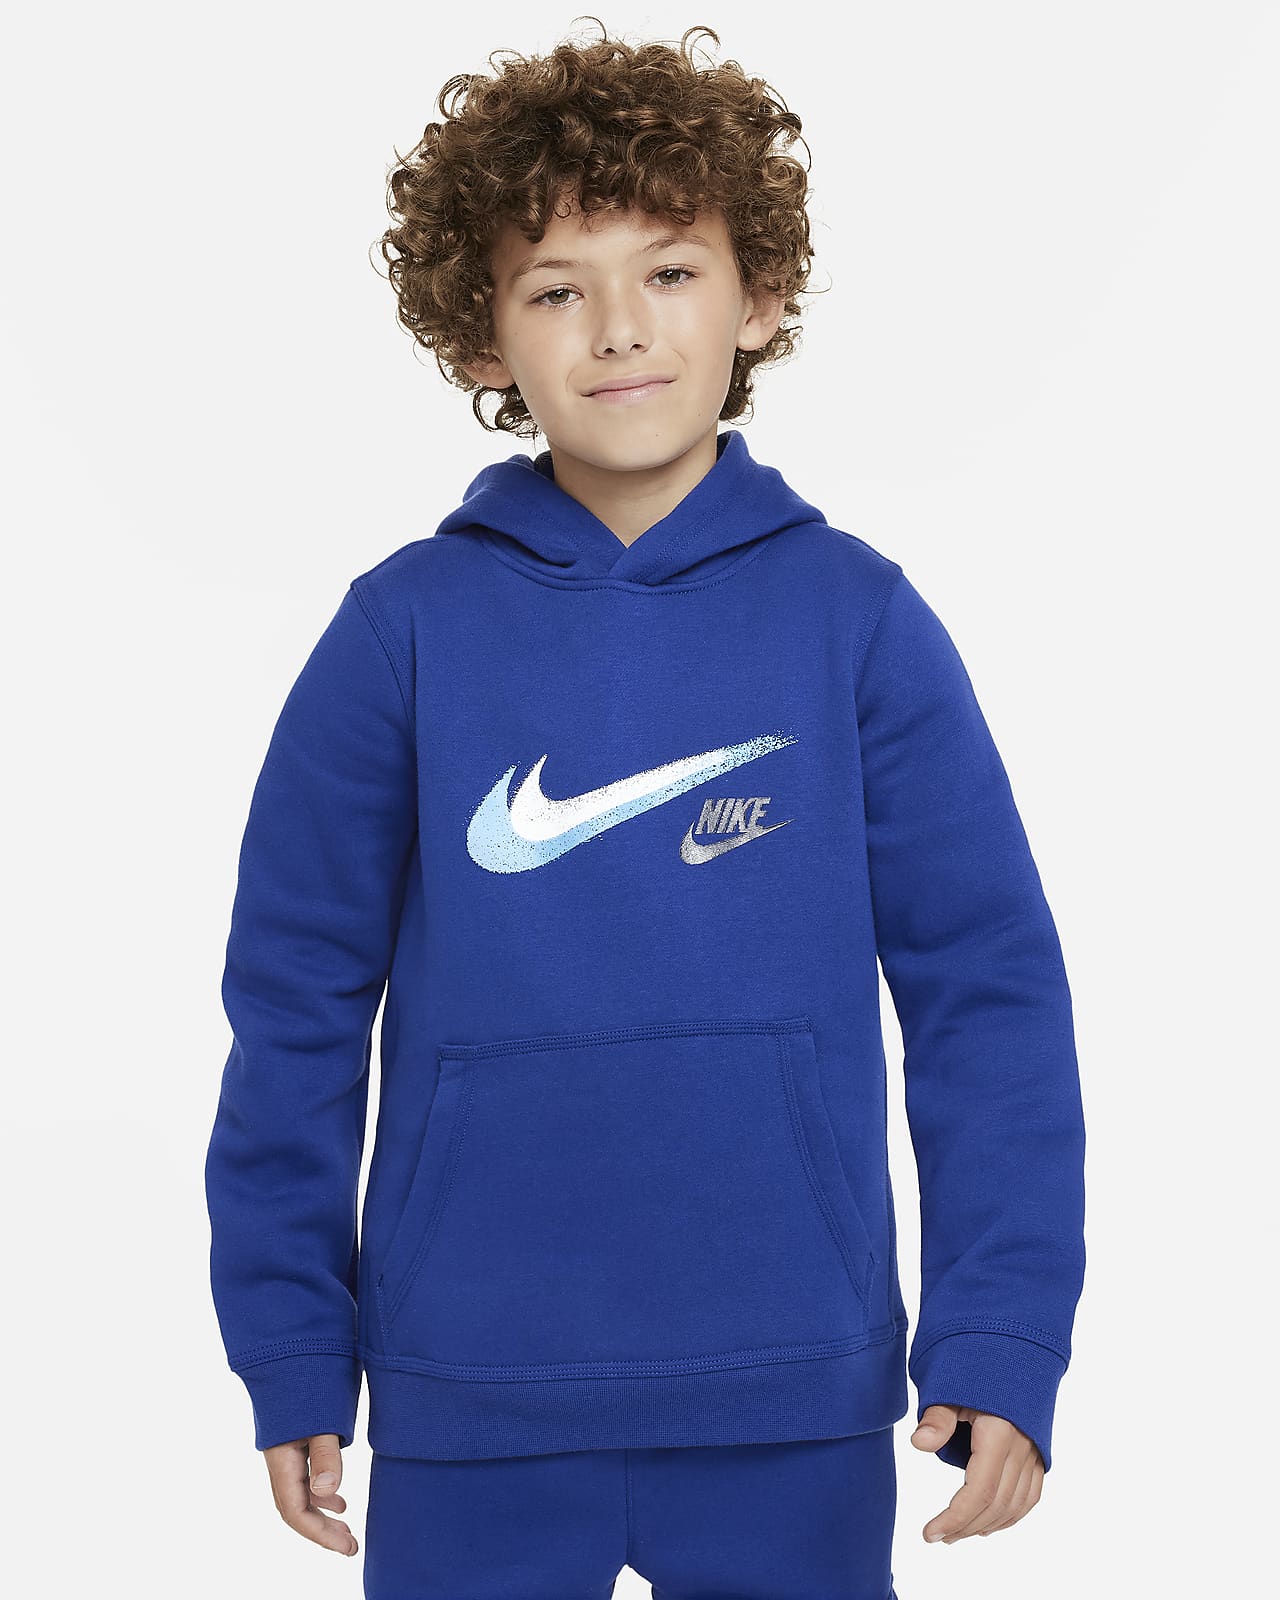 Nike Sportswear Older Kids' (Boys') Fleece Pullover Graphic Hoodie